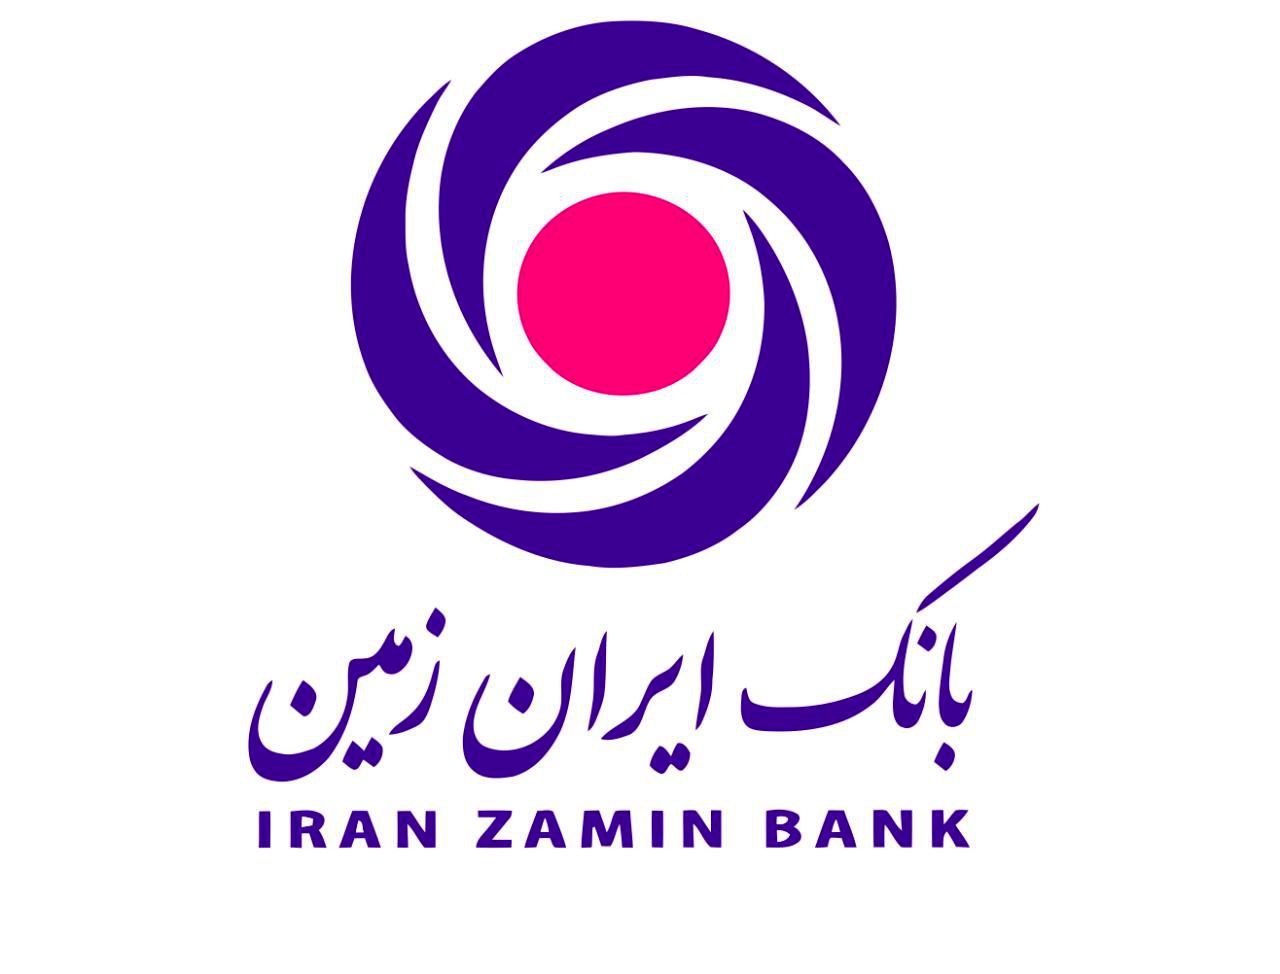 آگهی دعوت به مجمع عمومی عادی بطور فوق العاده بانک ایران زمین